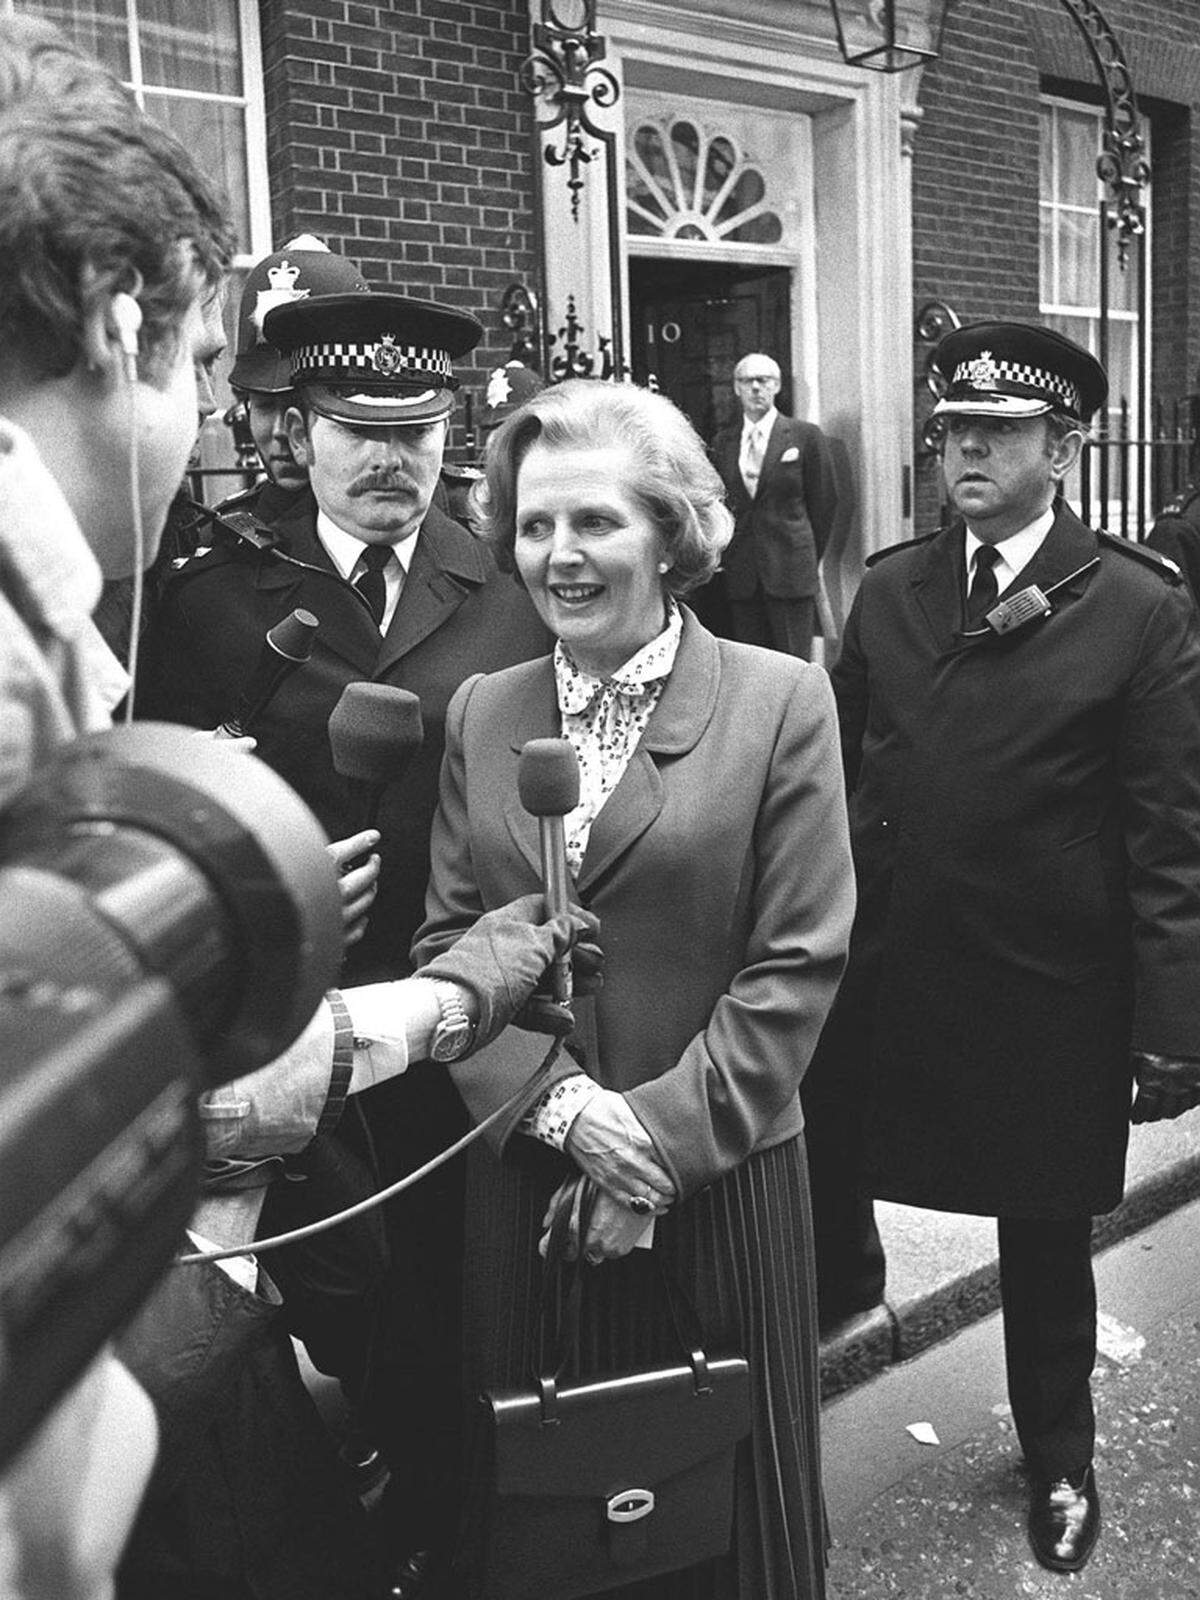 1959 erlangte sie als Kandidatin der konservativen Tory-Partei ein Mandat im Unterhaus. Ab 1970 war sie als Ministerin für Erziehung und Wissenschaft die einzige Frau im Kabinett von Premierminister Edward Heath. 1975 wählten die Konservativen Thatcher zur Partei-Chefin. 1979 wurde sie erste Regierungschefin Europas.